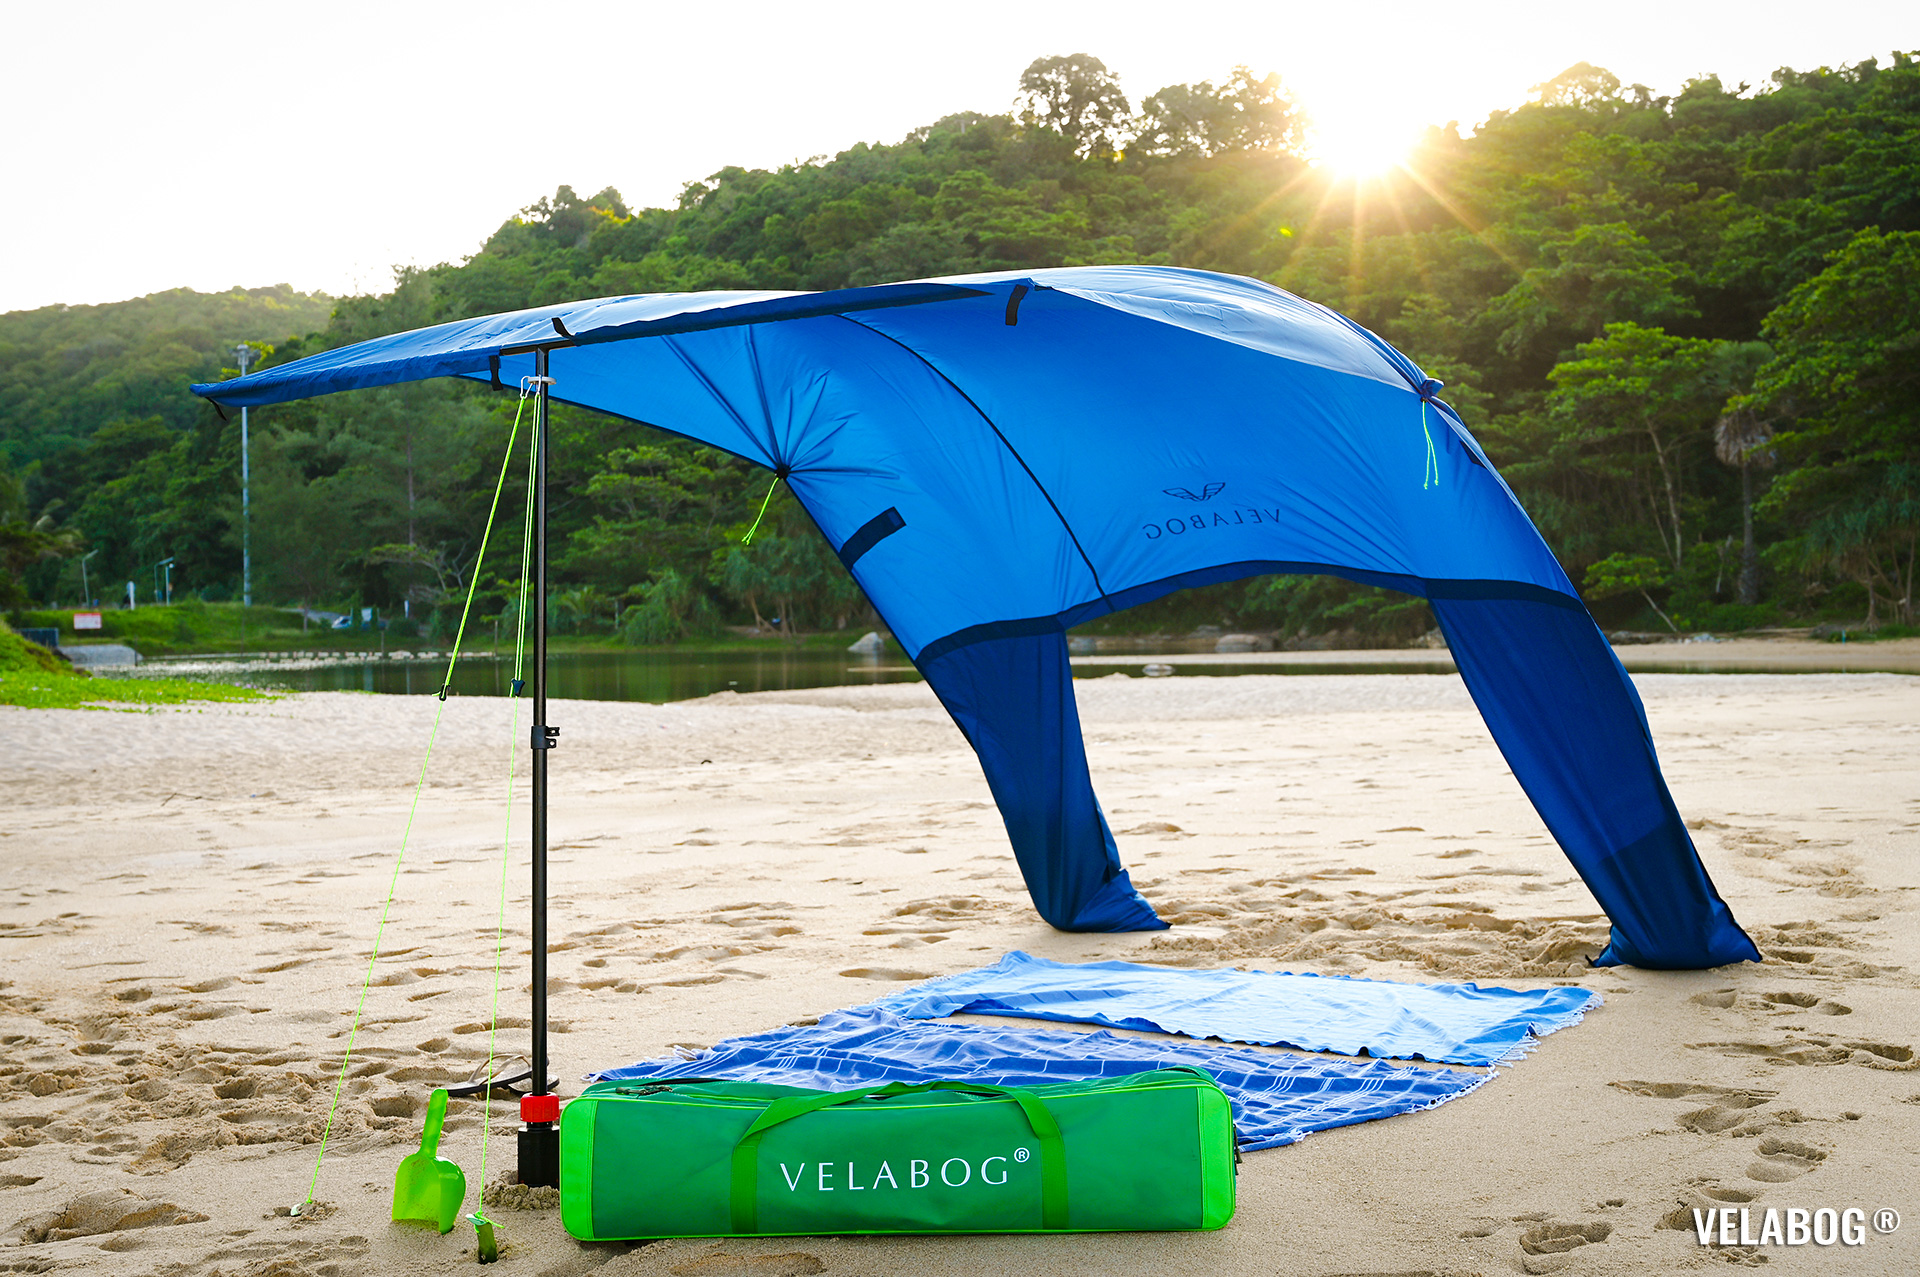 Blu notte ombrellone tenda spiaggia Velabog Breeze. La migliore parasole sulla spiaggia con vento.